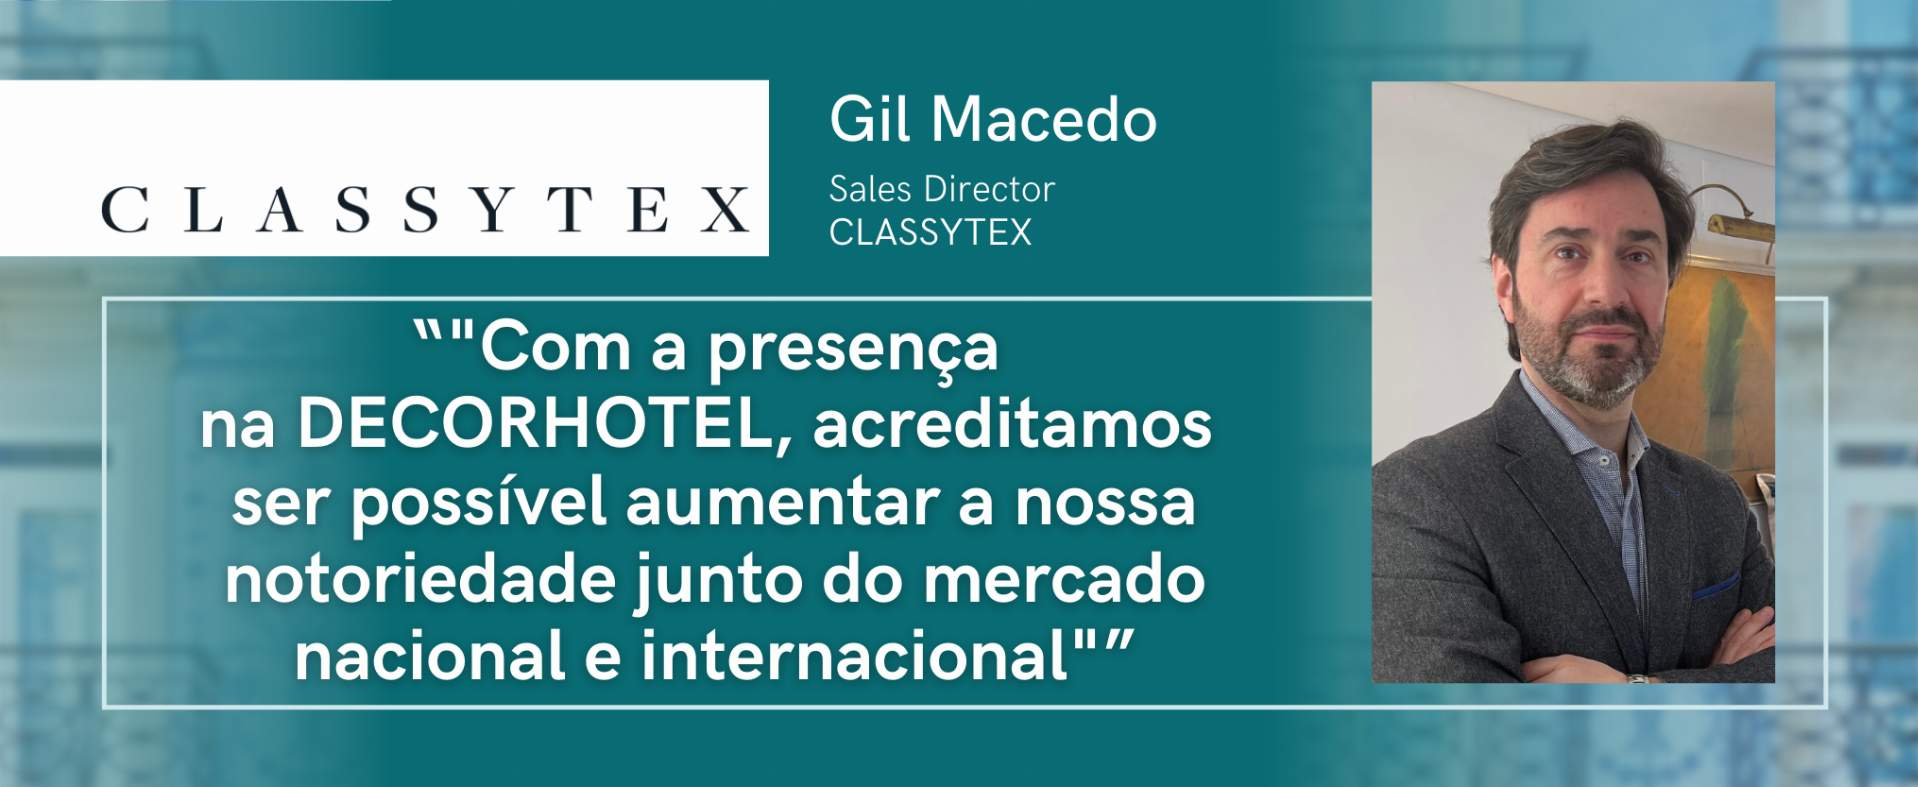 CLASSYTEX: "Com a presença na DECORHOTEL, acreditamos ser possível aumentar a nossa notoriedade junto do mercado nacional e internacional"